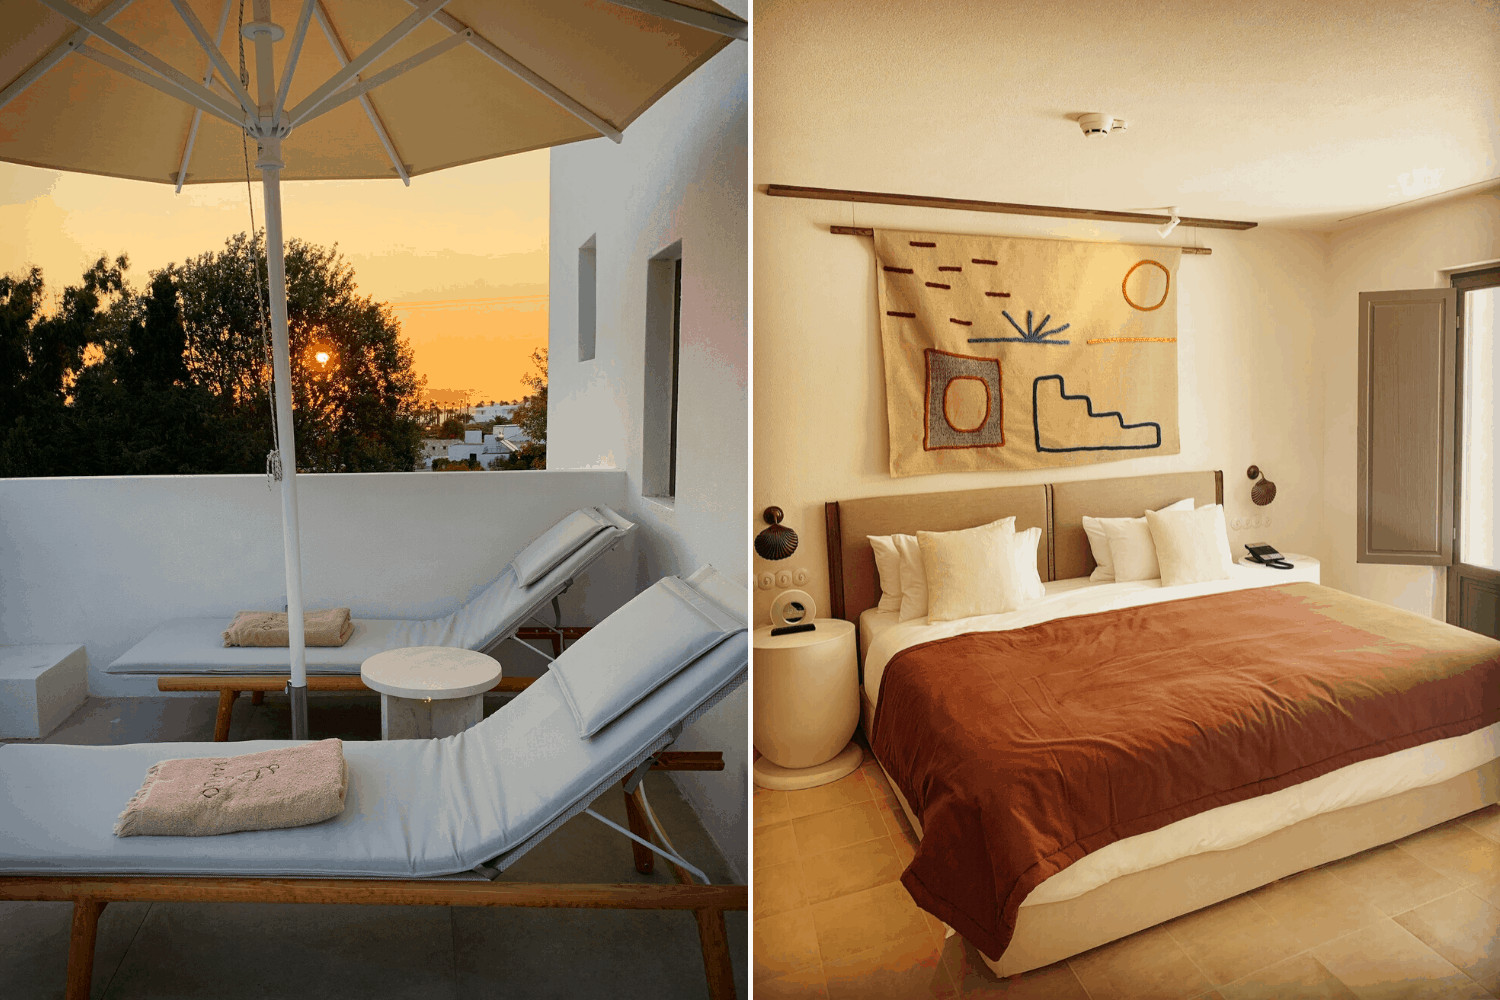 Warme Naturfarben dominieren das Tnerior im parilio Designhotel auf Paros, griechenland